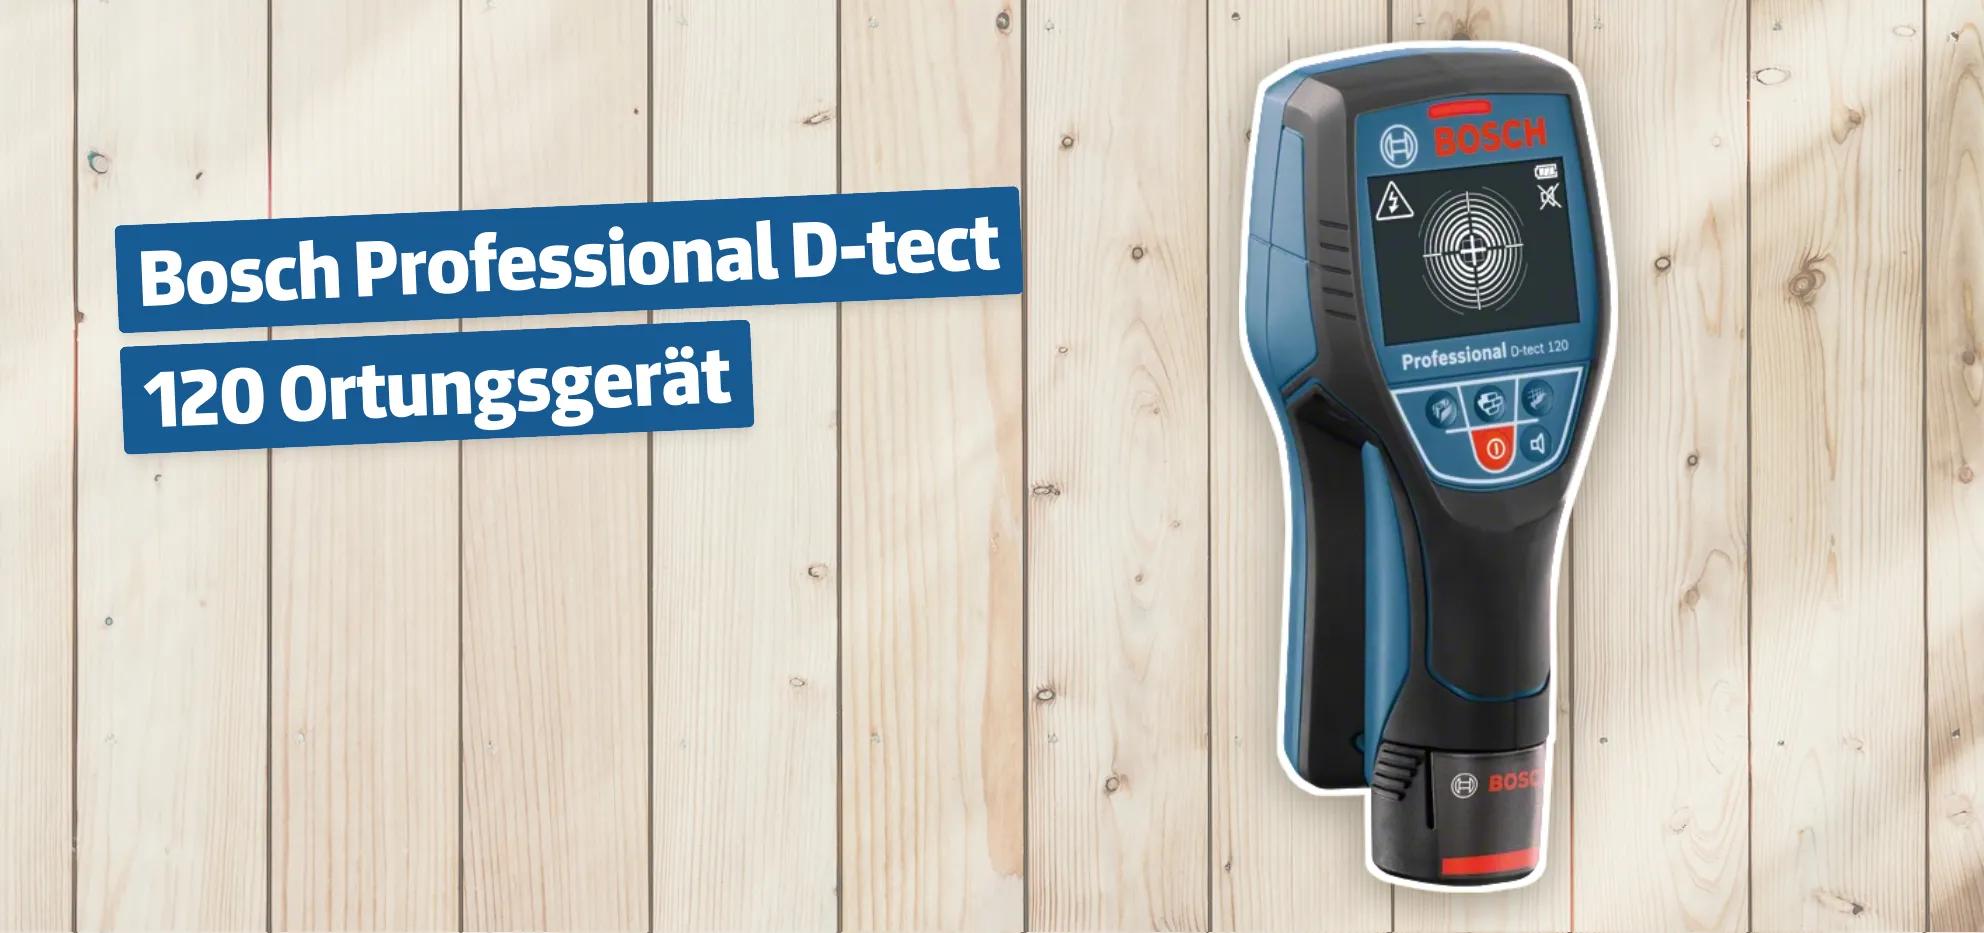 Bosch Professional D-tect 120 Ortungsgerät